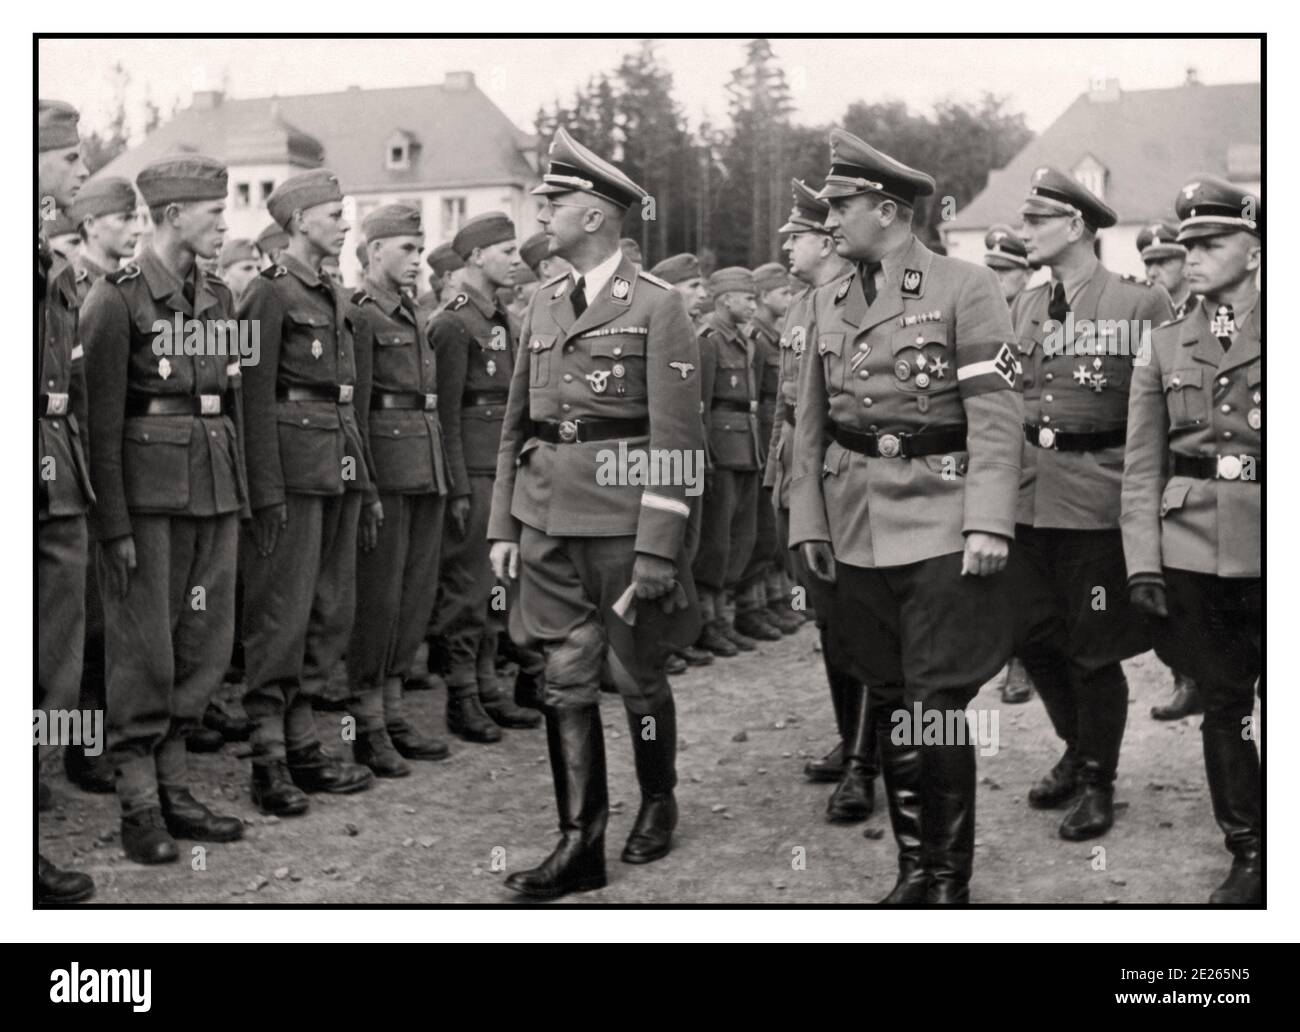 HIMMLER photo de propagande de la Seconde Guerre mondiale de Reichsfuhrer de la Schutzstaffel Heinrich Himmler et Artur Axmann, chef de la Jeunesse Hitler (Hitlerjugend) Inspection des recrues en formation dans la Seconde Guerre mondiale de 1943 La guerre l'Allemagne nazie Banque D'Images